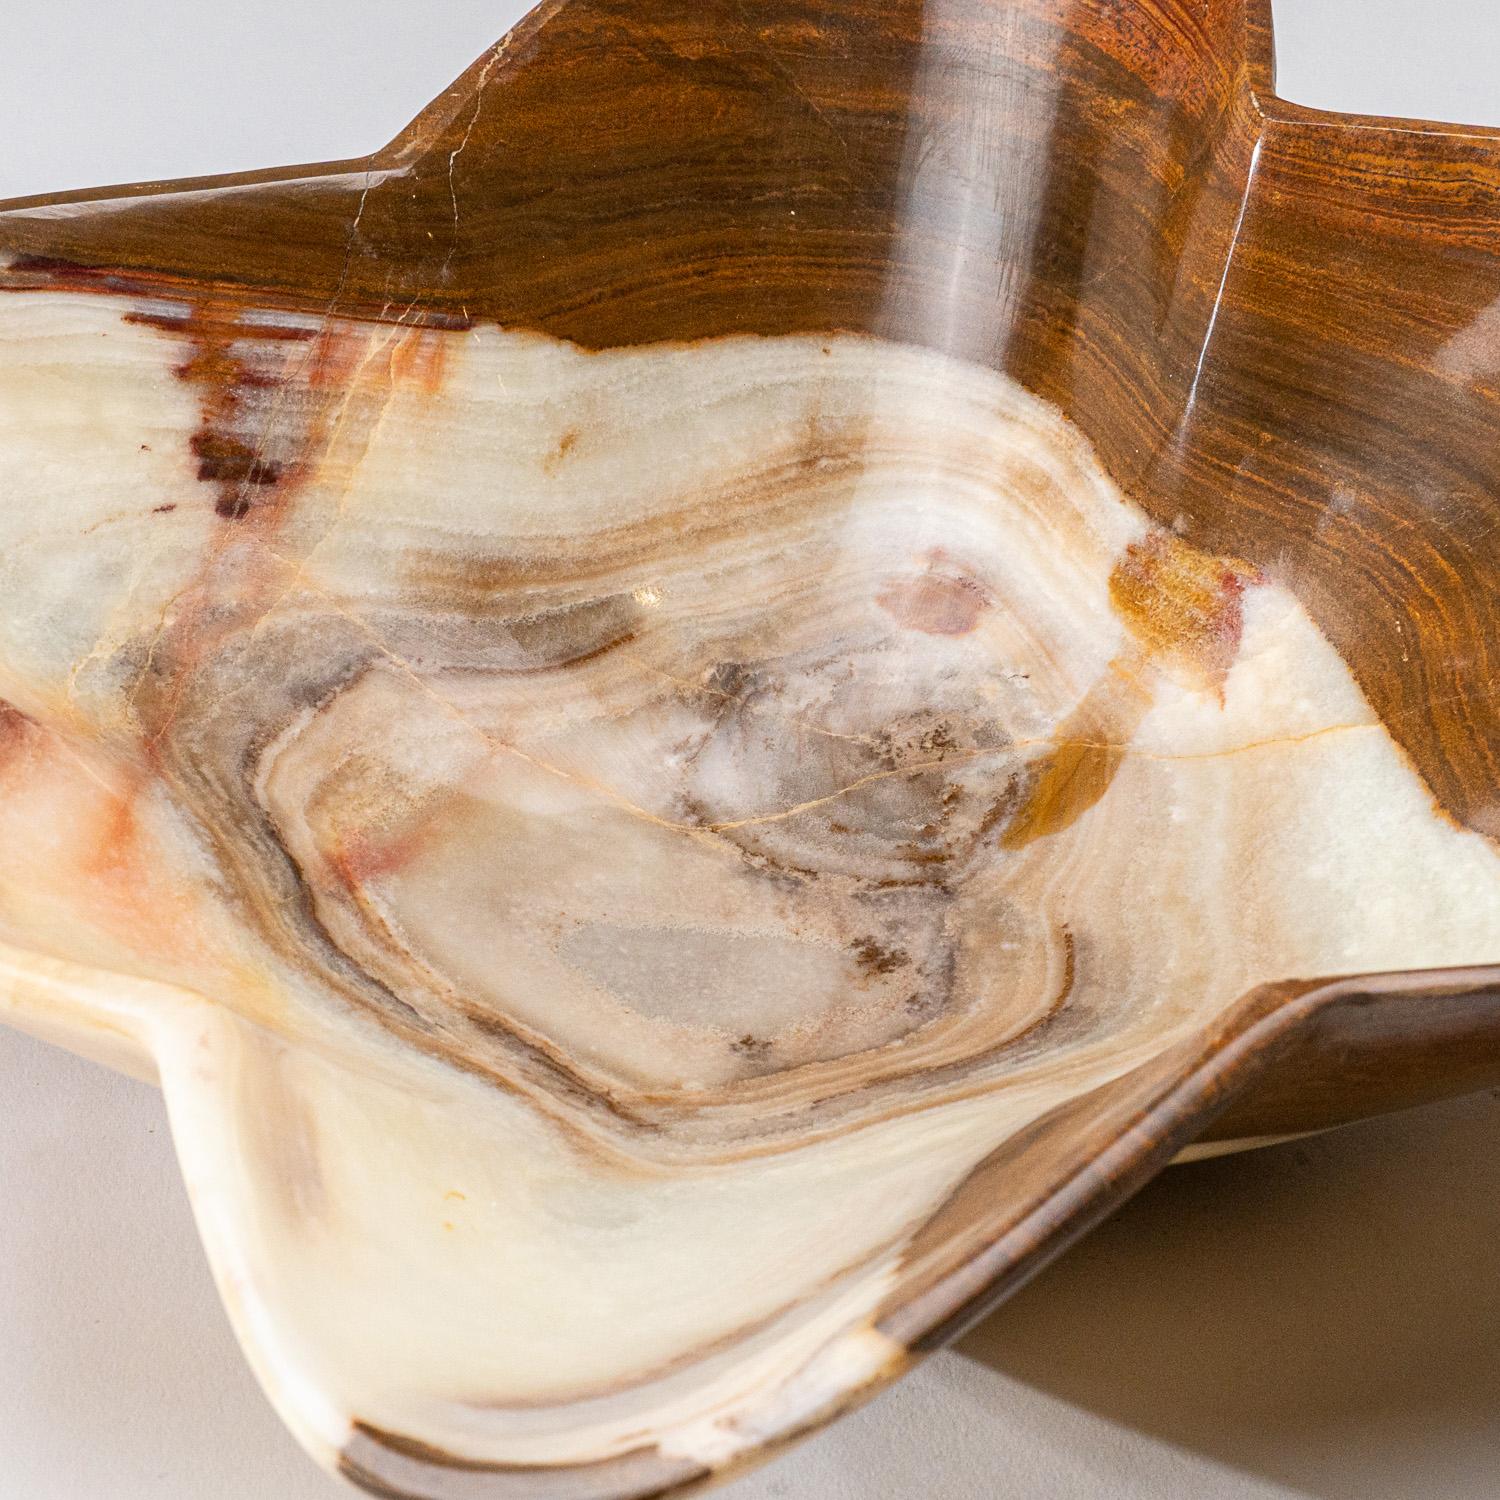 Einzigartige, massive, mittelgroße, dekorative Schale aus natürlichem Onyx, die aus einem einzigen Stück gebänderten natürlichen Onyx geschnitzt wurde. Dieses unglaubliche Stück ist auf Hochglanz poliert. Dieses einzigartige Stück vereint natürliche